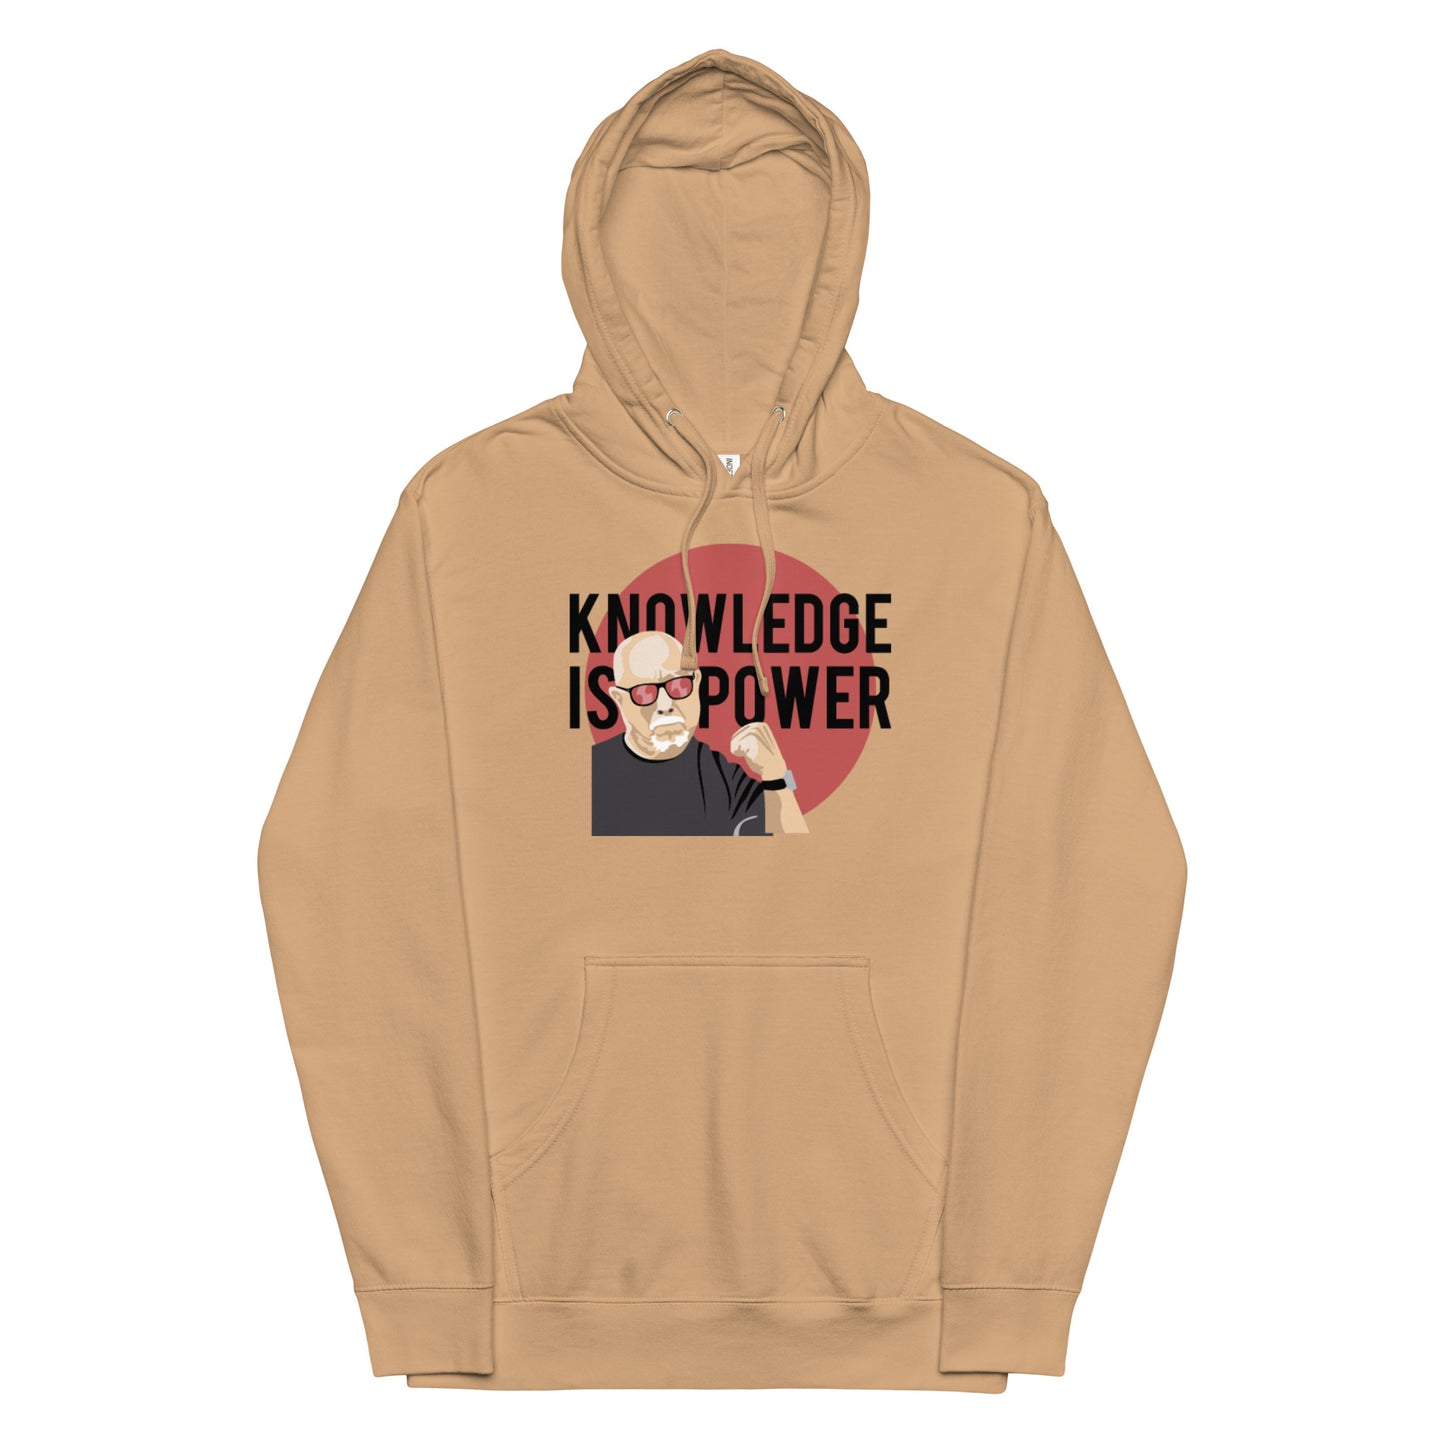 Knowledge is power hoodie - dark